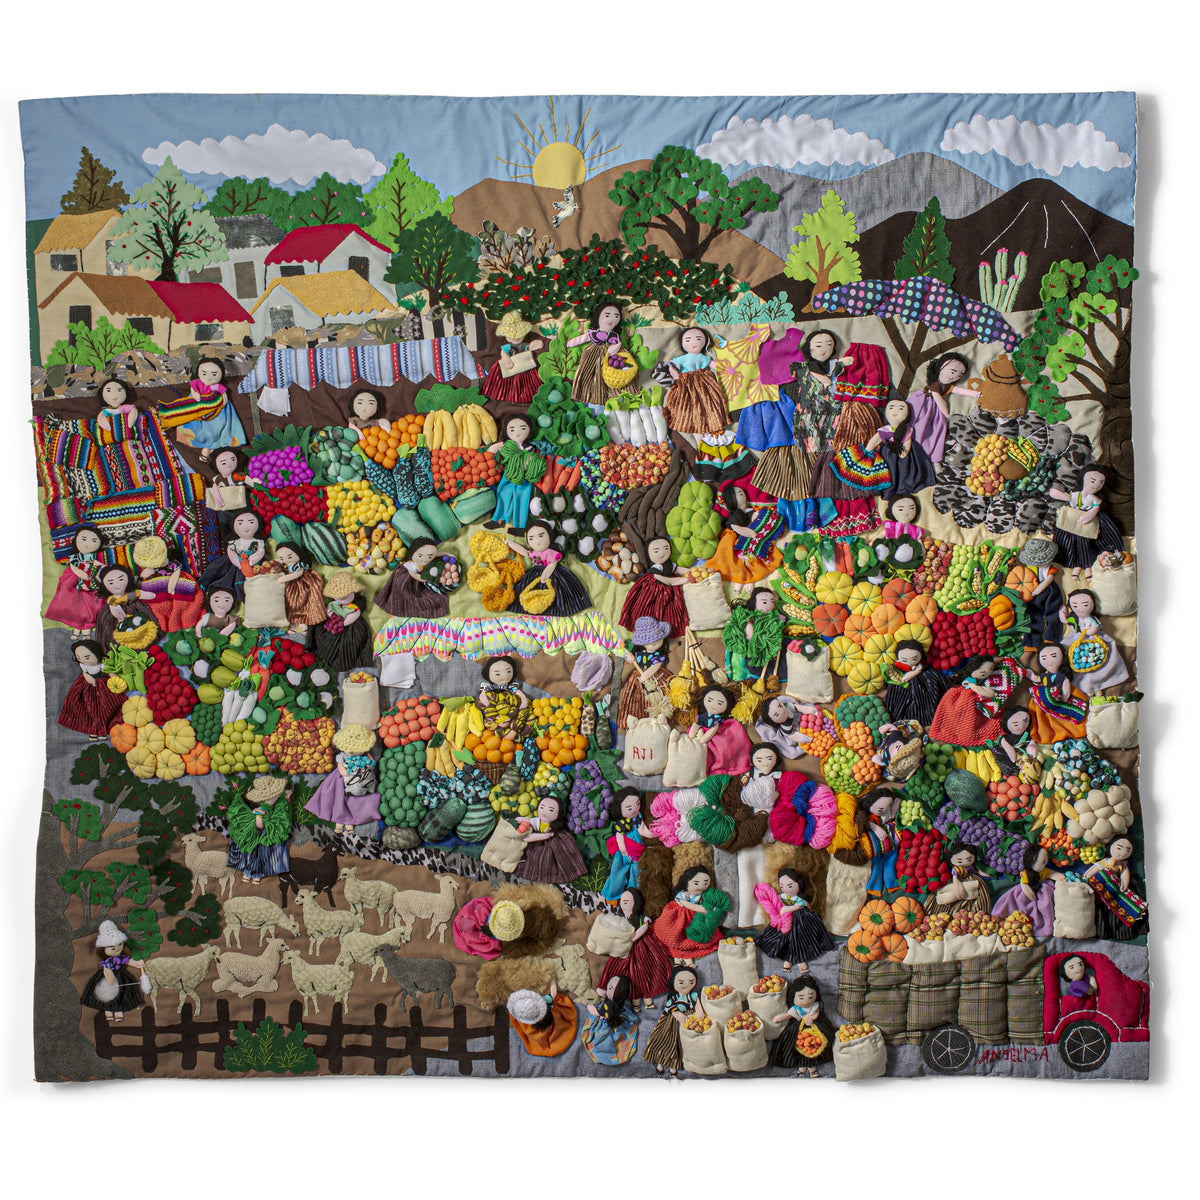 Peruvian Farmer's Market - Large 3-D Arpillera Art Quilt